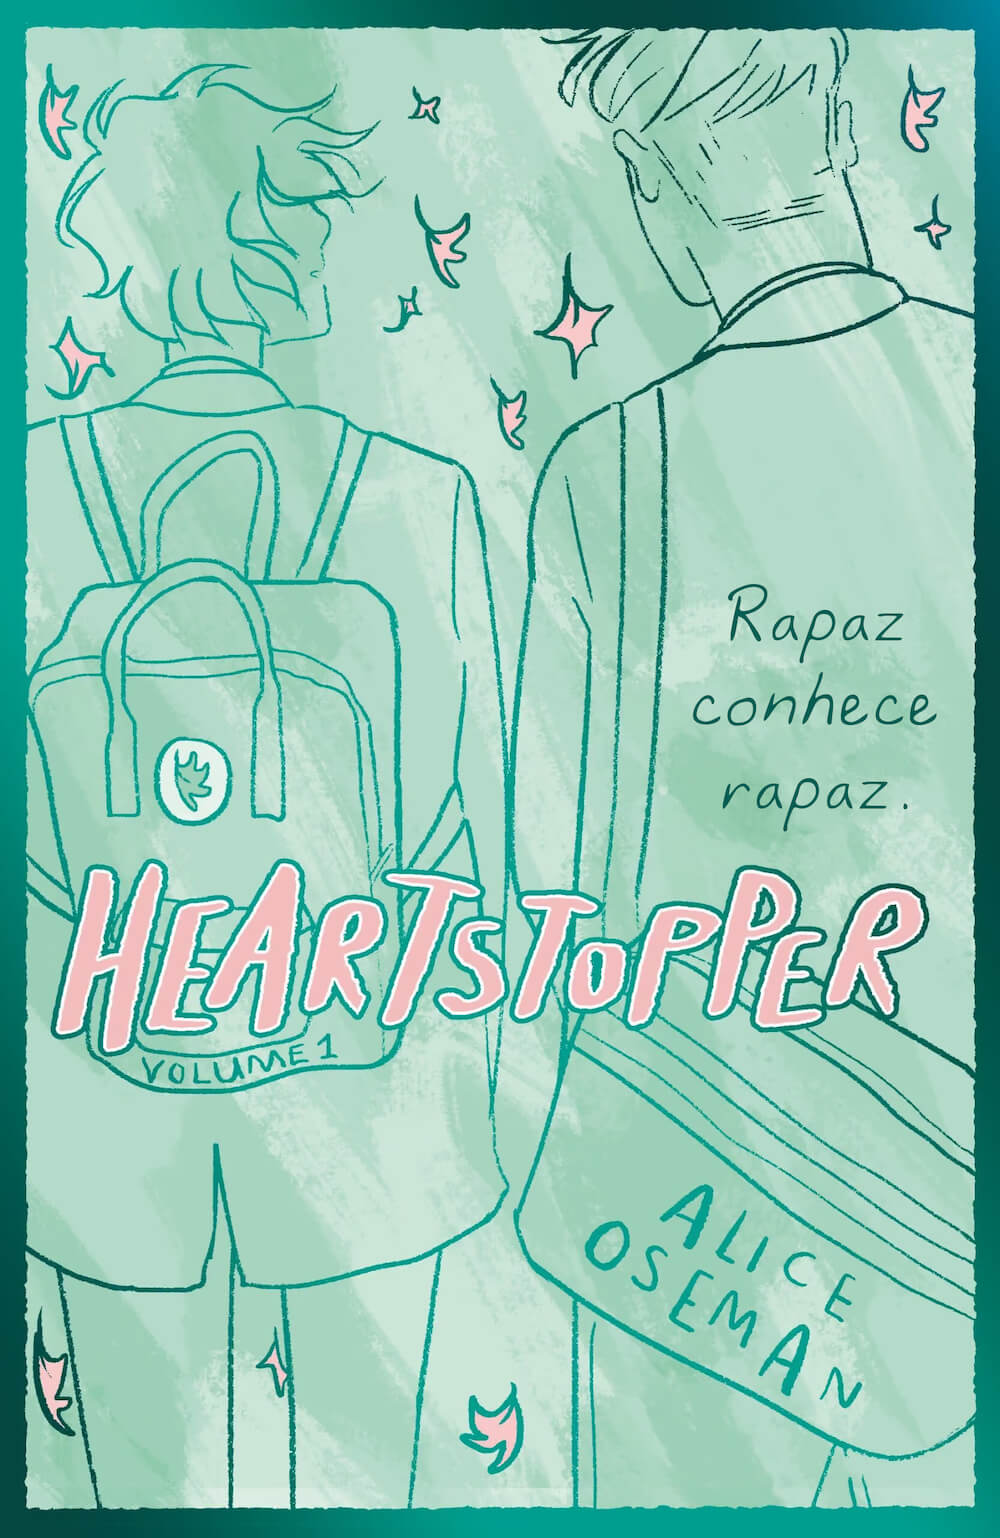 Heartstopper — Volume 1 — Rapaz Conhece Rapaz — Edição Especial